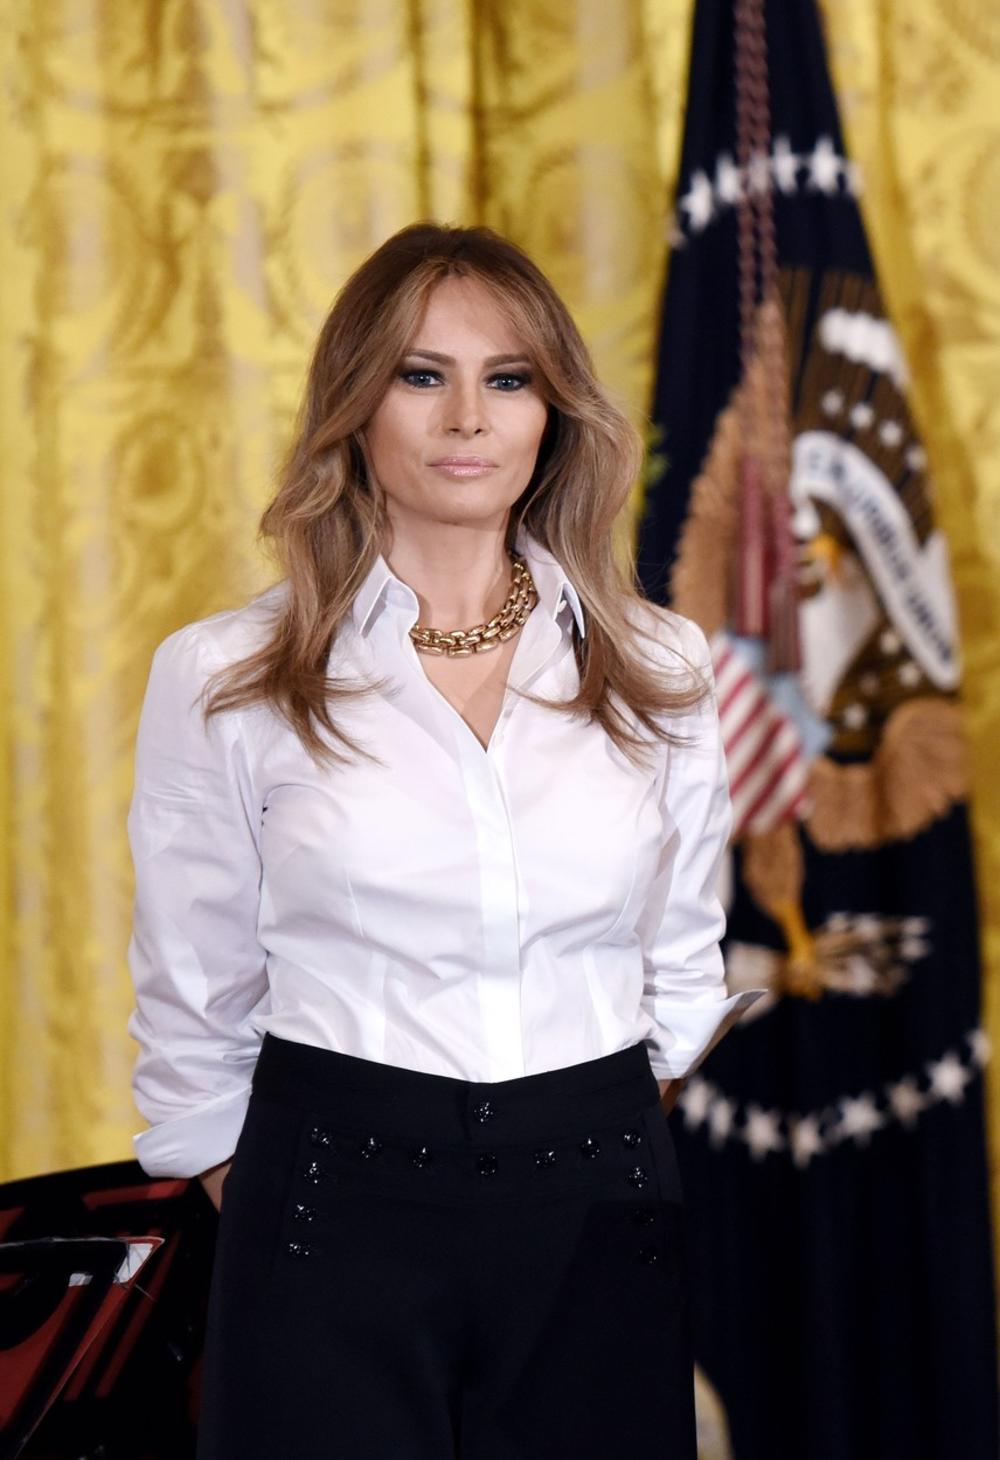 Prva dama Amerike iznenadila je svoje fanove odabirom stajlinga: palaco pantalone, izuzetno neudobne cipele i jednostavno bela košulja bile su neočekivan izbor